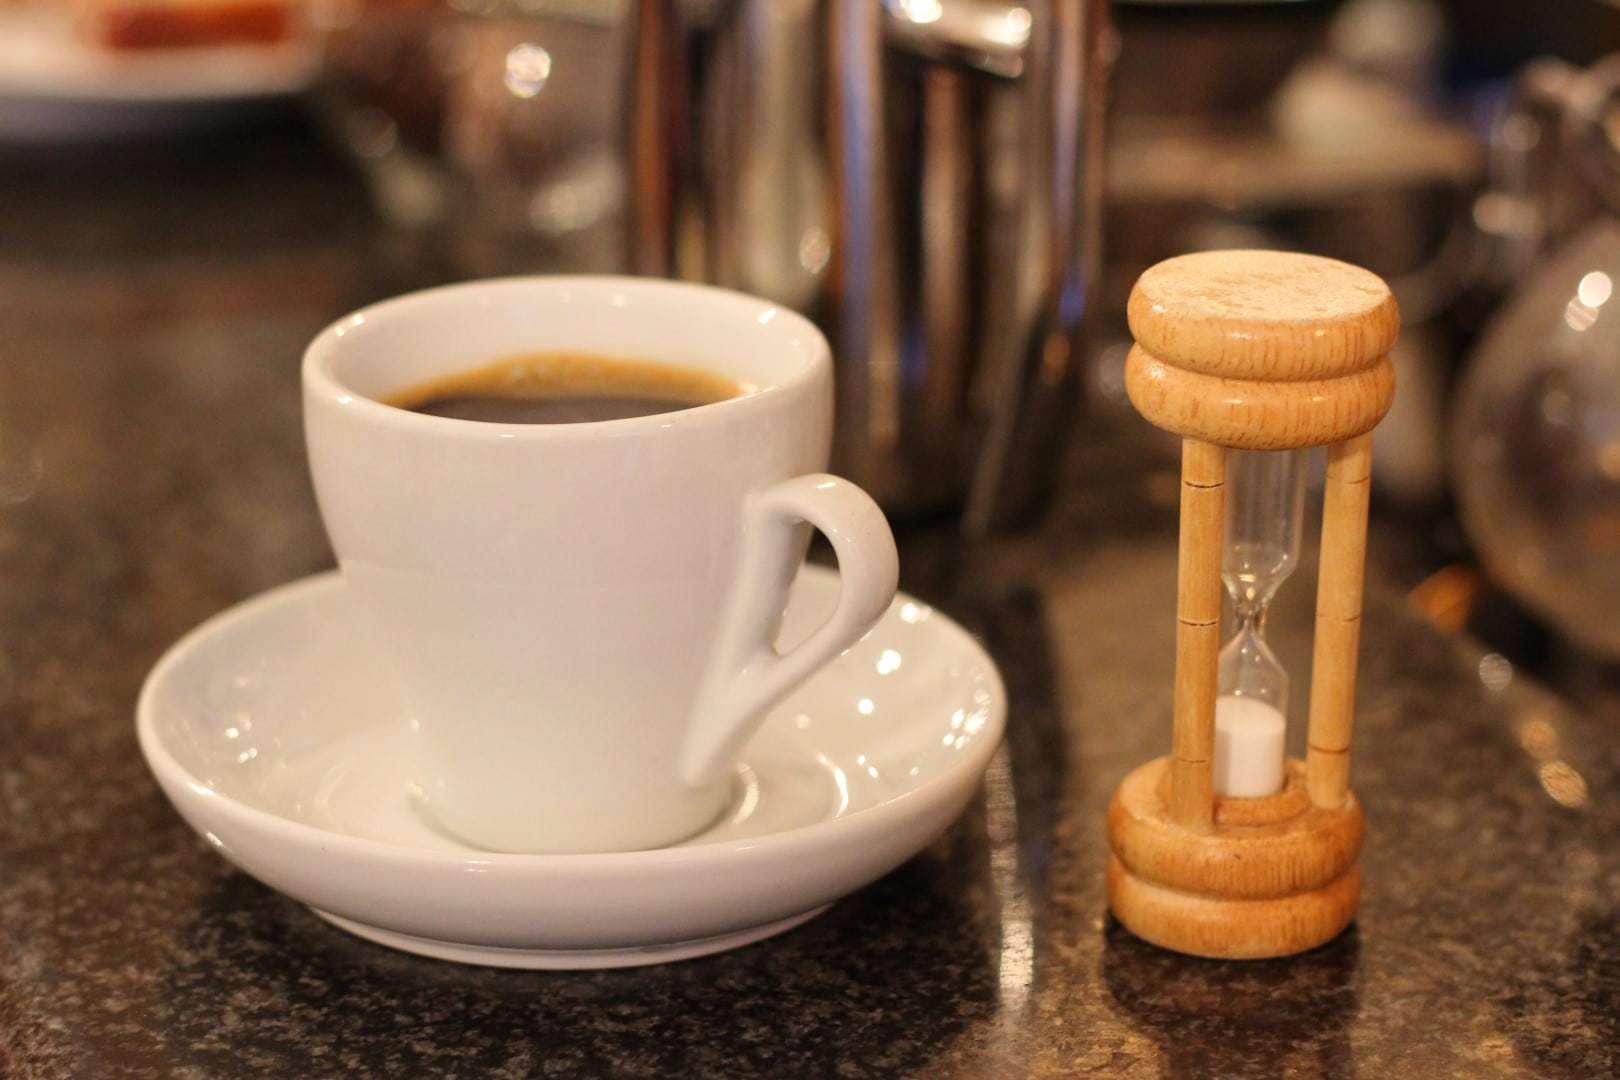 cup of kopi luwak